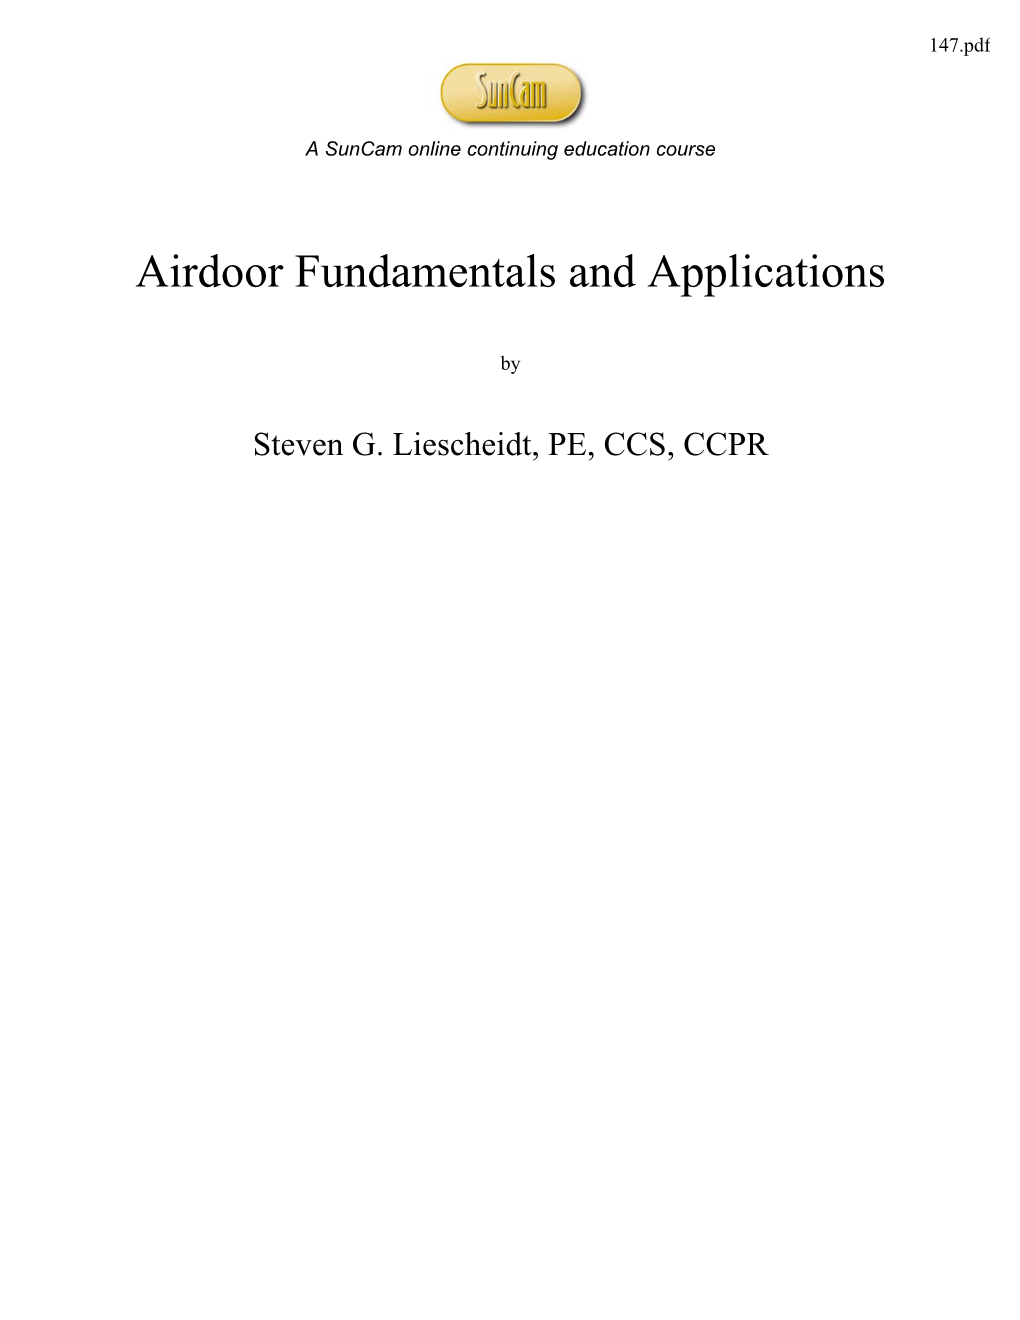 Airdoor Fundamentals and Applications